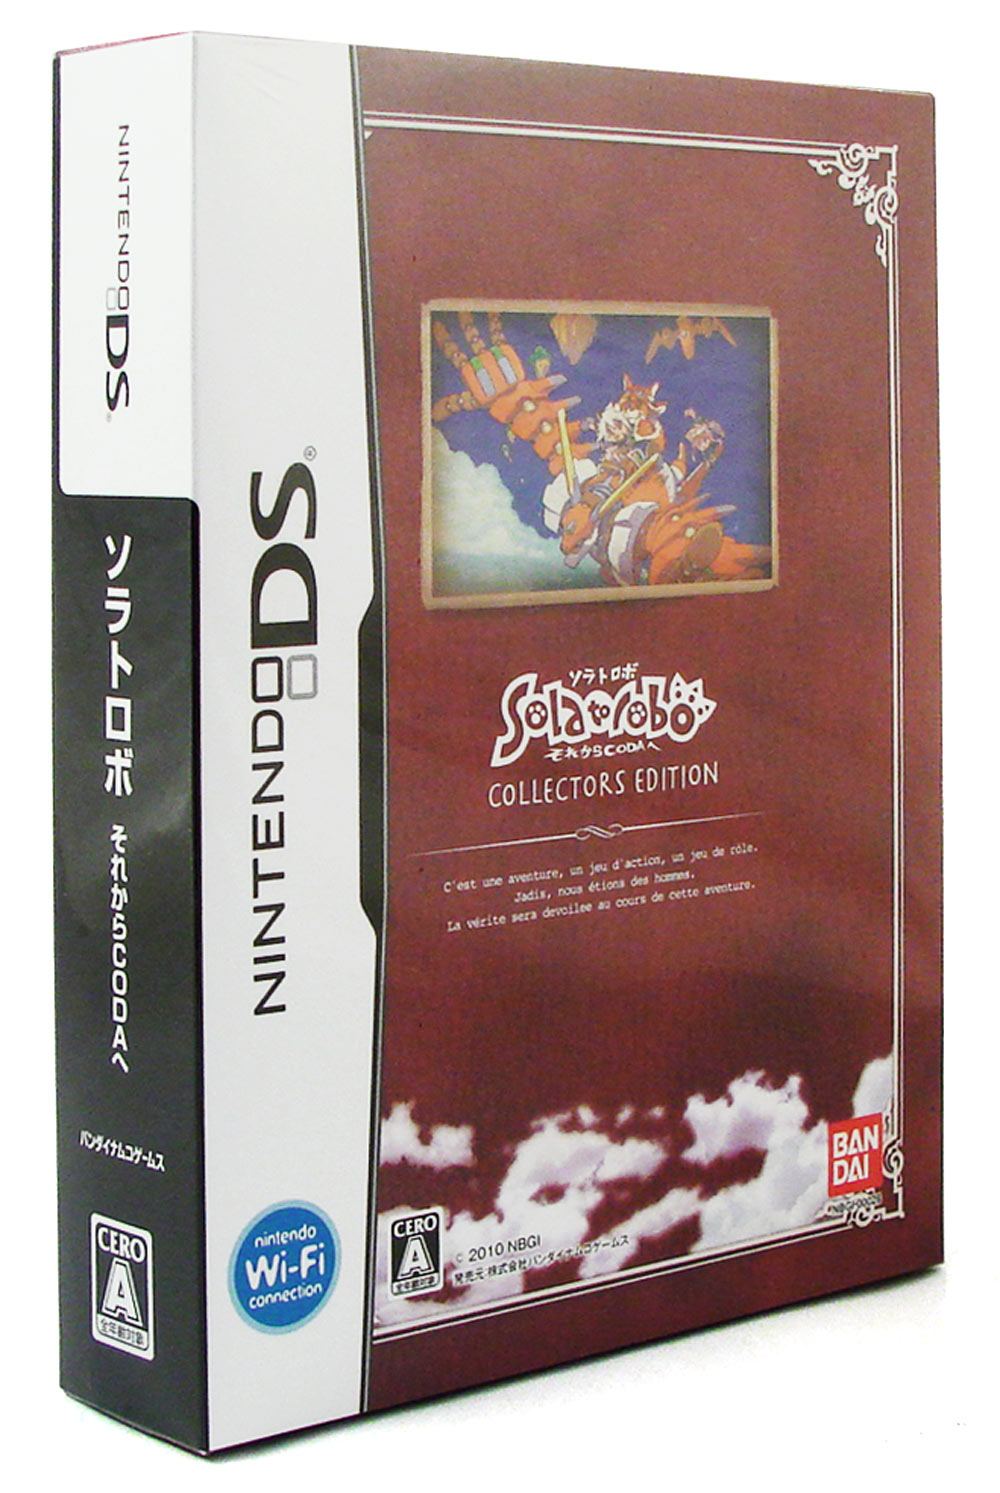 Solatorobo: Sore kara Coda e [Collector's Edition] for Nintendo DS